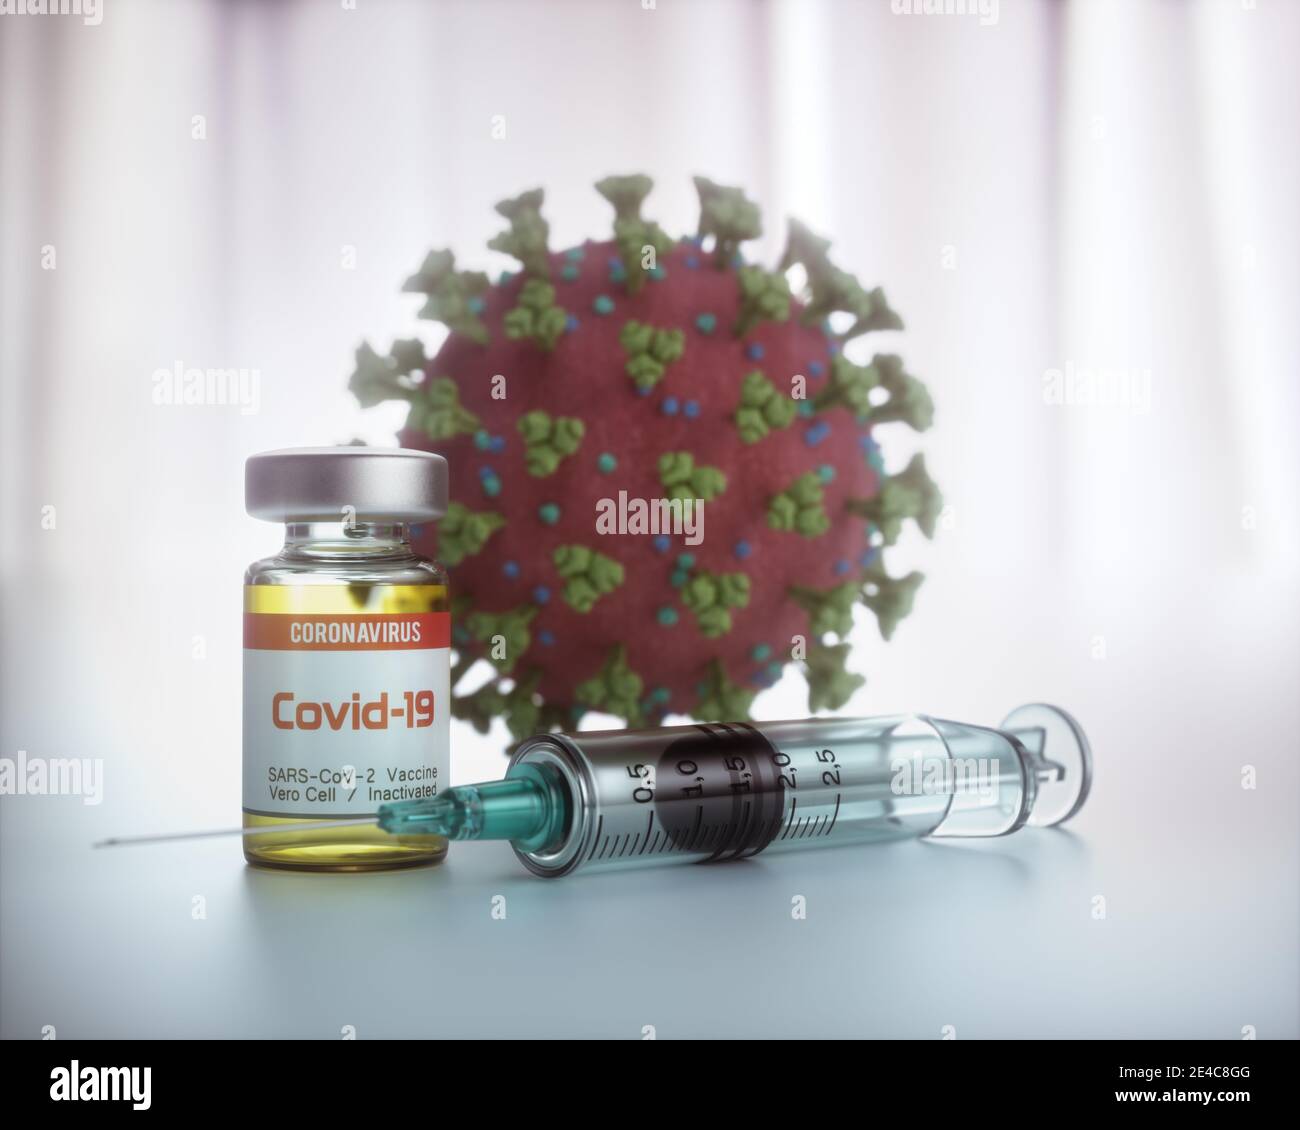 Imagen conceptual para el descubrimiento de una vacuna para el Covid-19, Coronavirus, 2019-nCoV, SARS-CoV-2. Ilustración 3D. Foto de stock